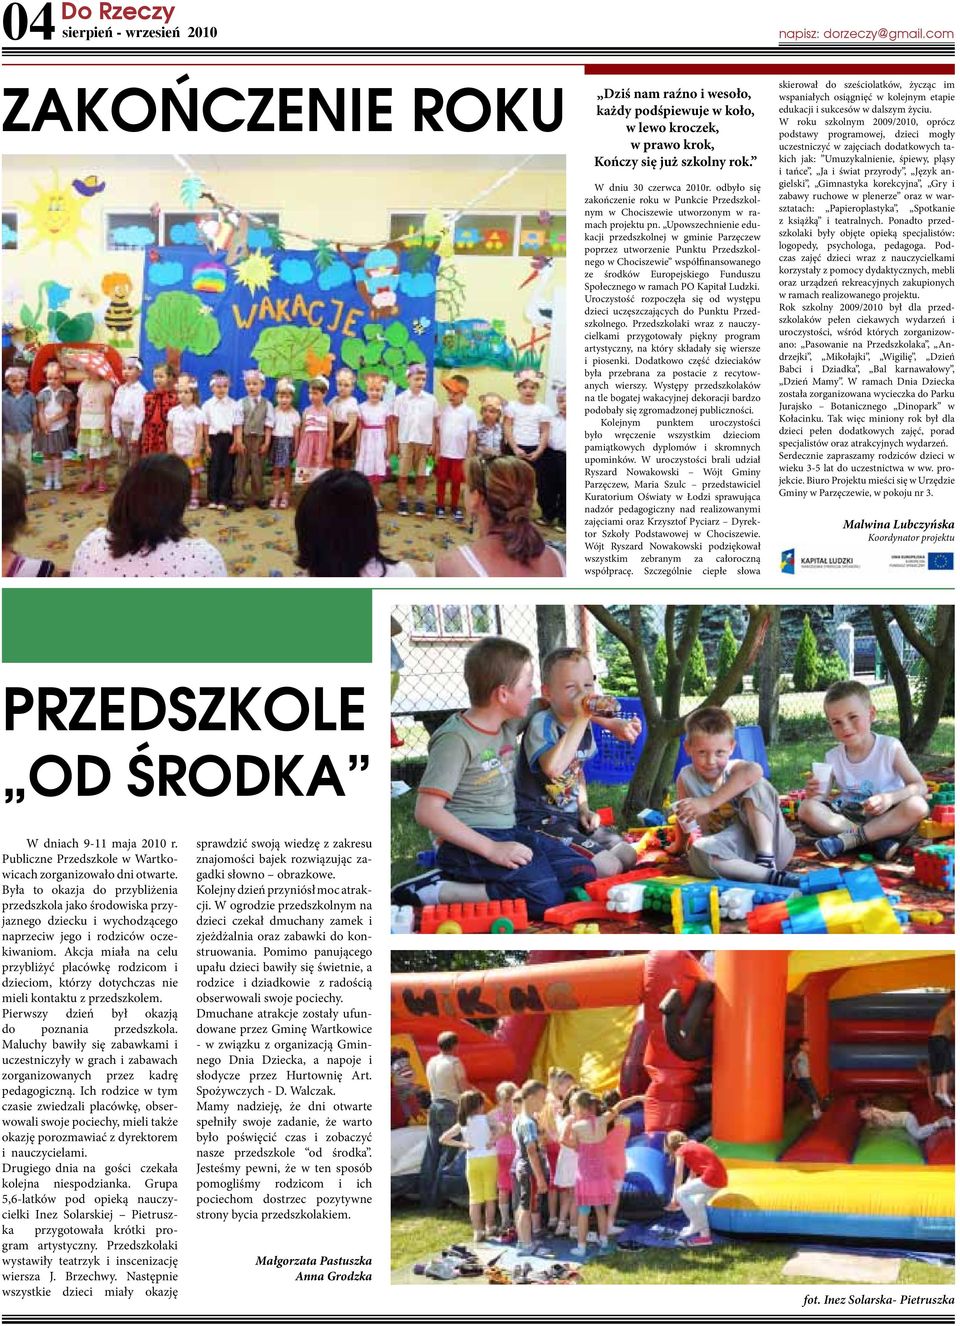 Upowszechnienie edukacji przedszkolnej w gminie Parzęczew poprzez utworzenie Punktu Przedszkolnego w Chociszewie współfinansowanego ze środków Europejskiego Funduszu Społecznego w ramach PO Kapitał